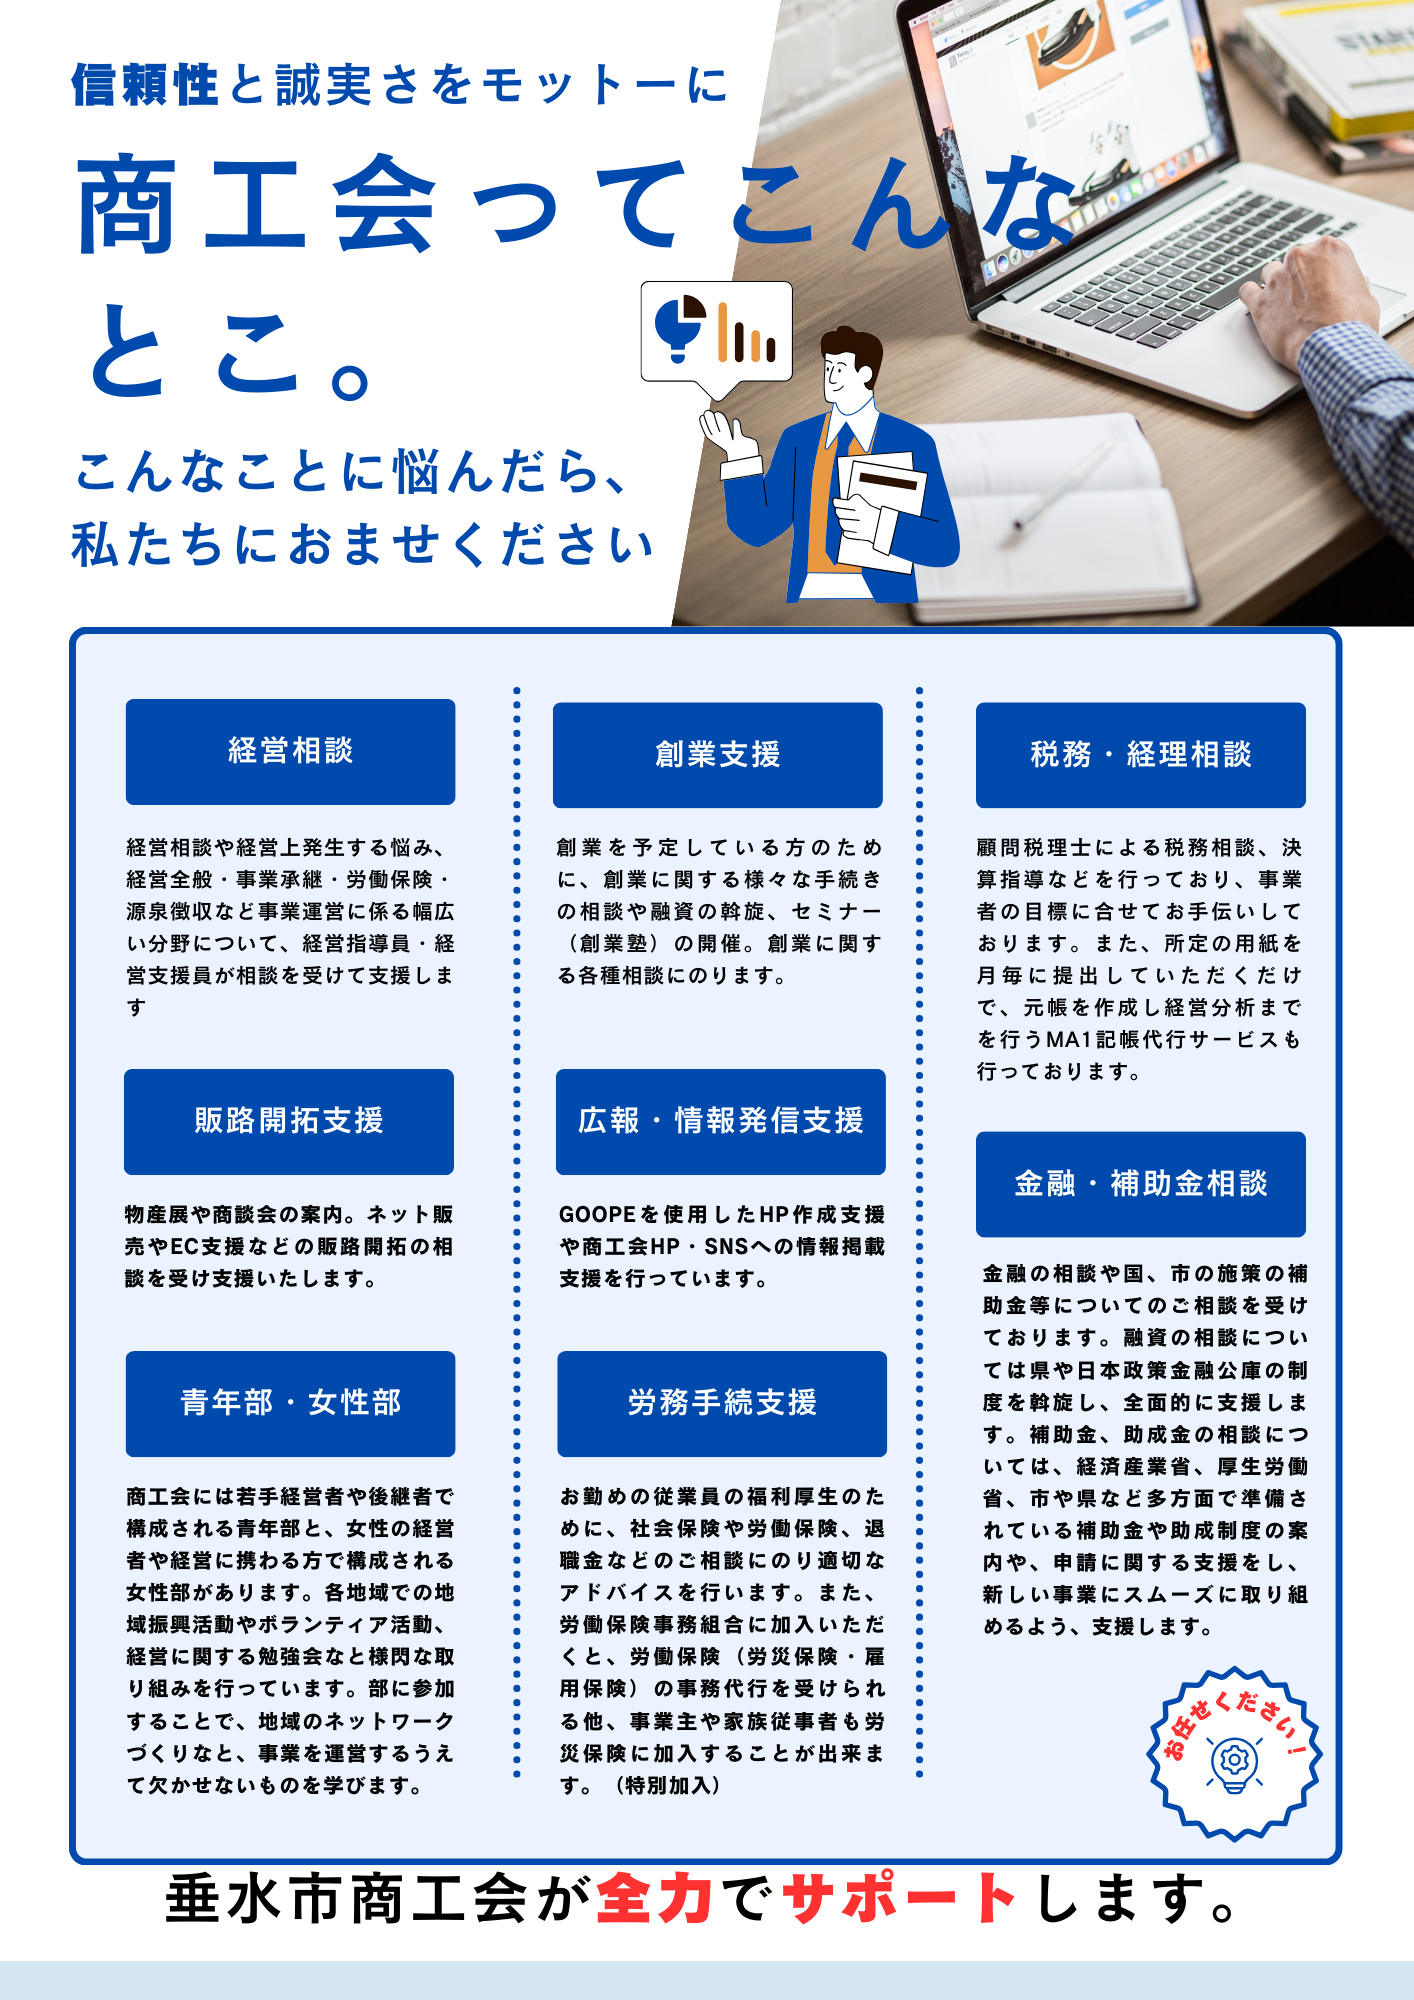 白 青 シンプル ビジネス 会計事務所 士業 悩み A4フライヤー.png